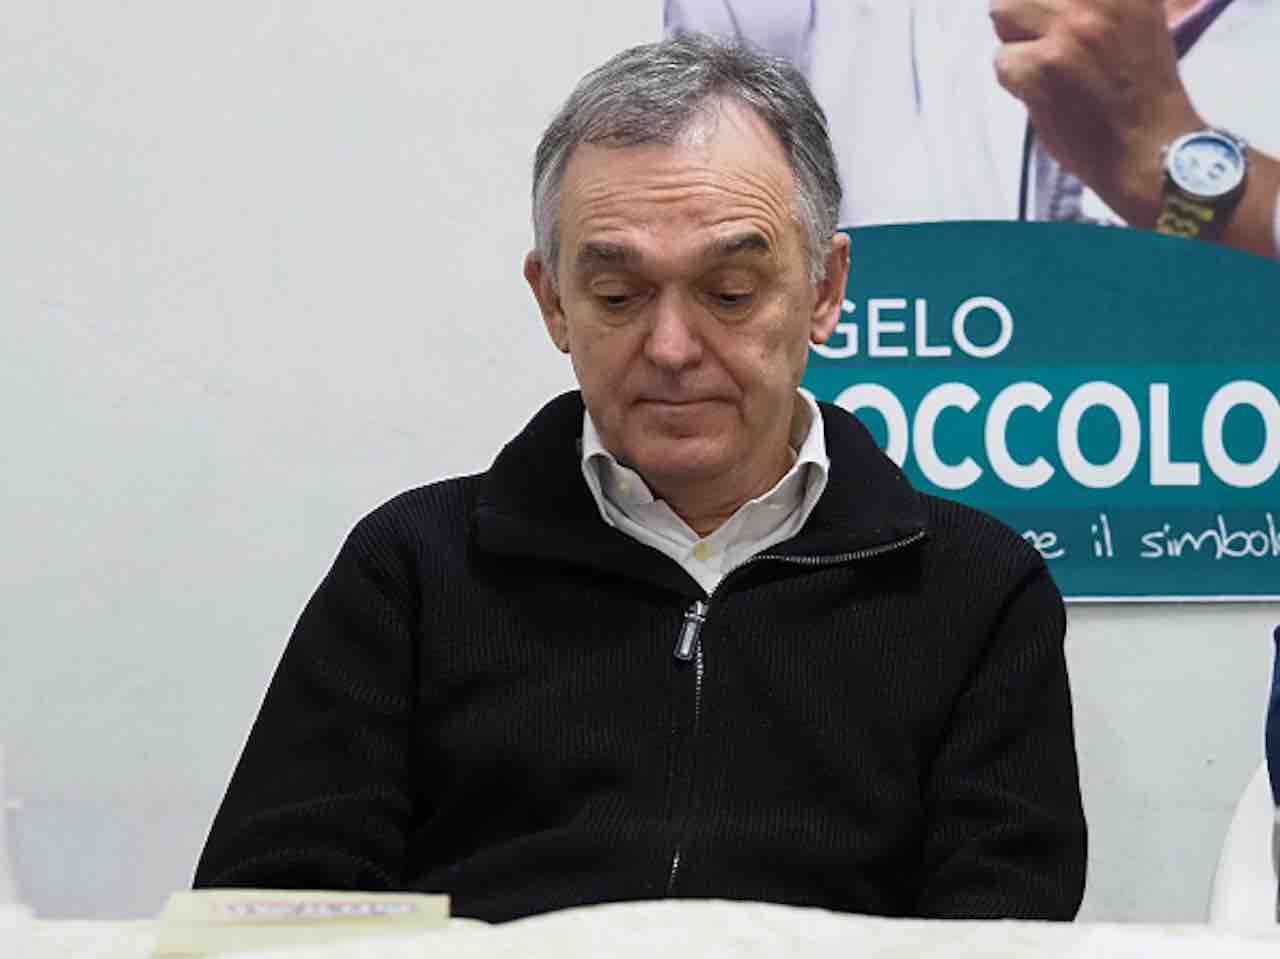 Morto il padre del presidente della Regione Toscana Enrico Rossi (Getty) - meteoweek.com